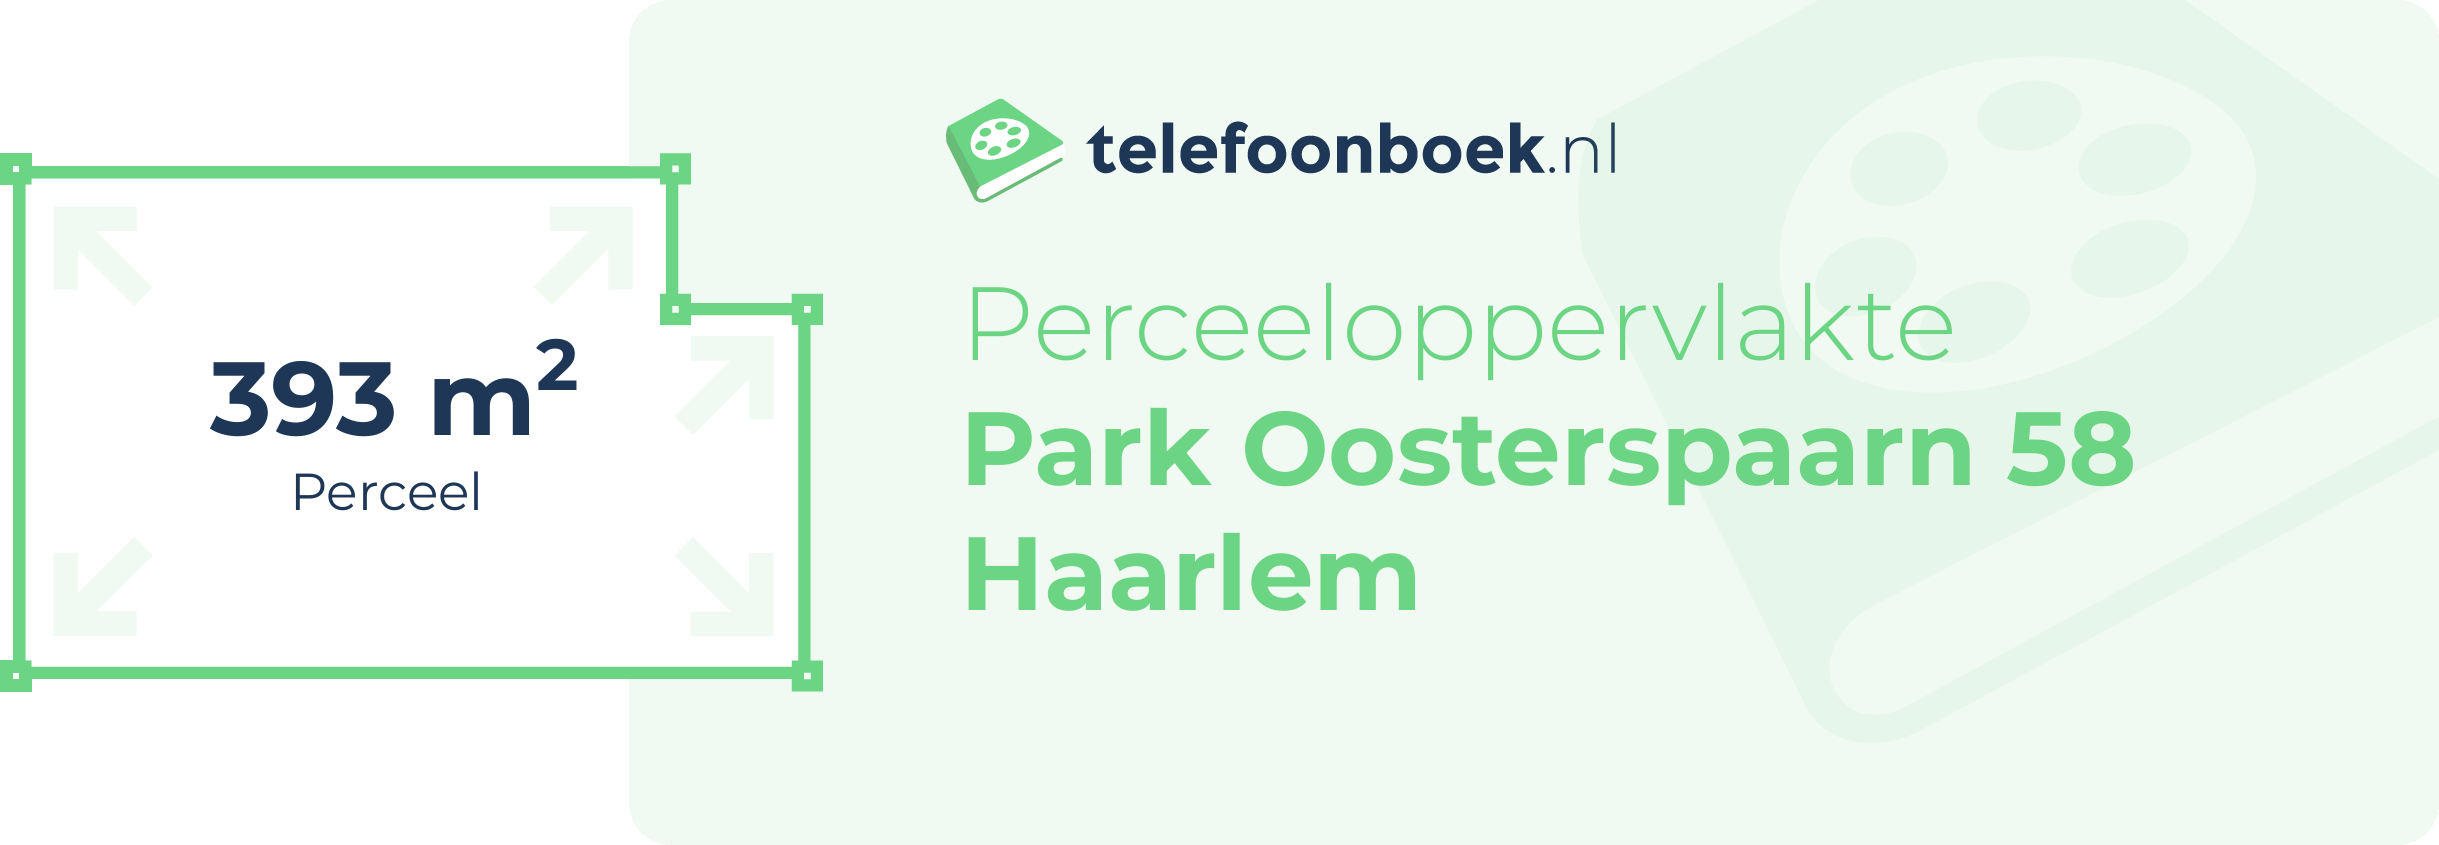 Perceeloppervlakte Park Oosterspaarn 58 Haarlem